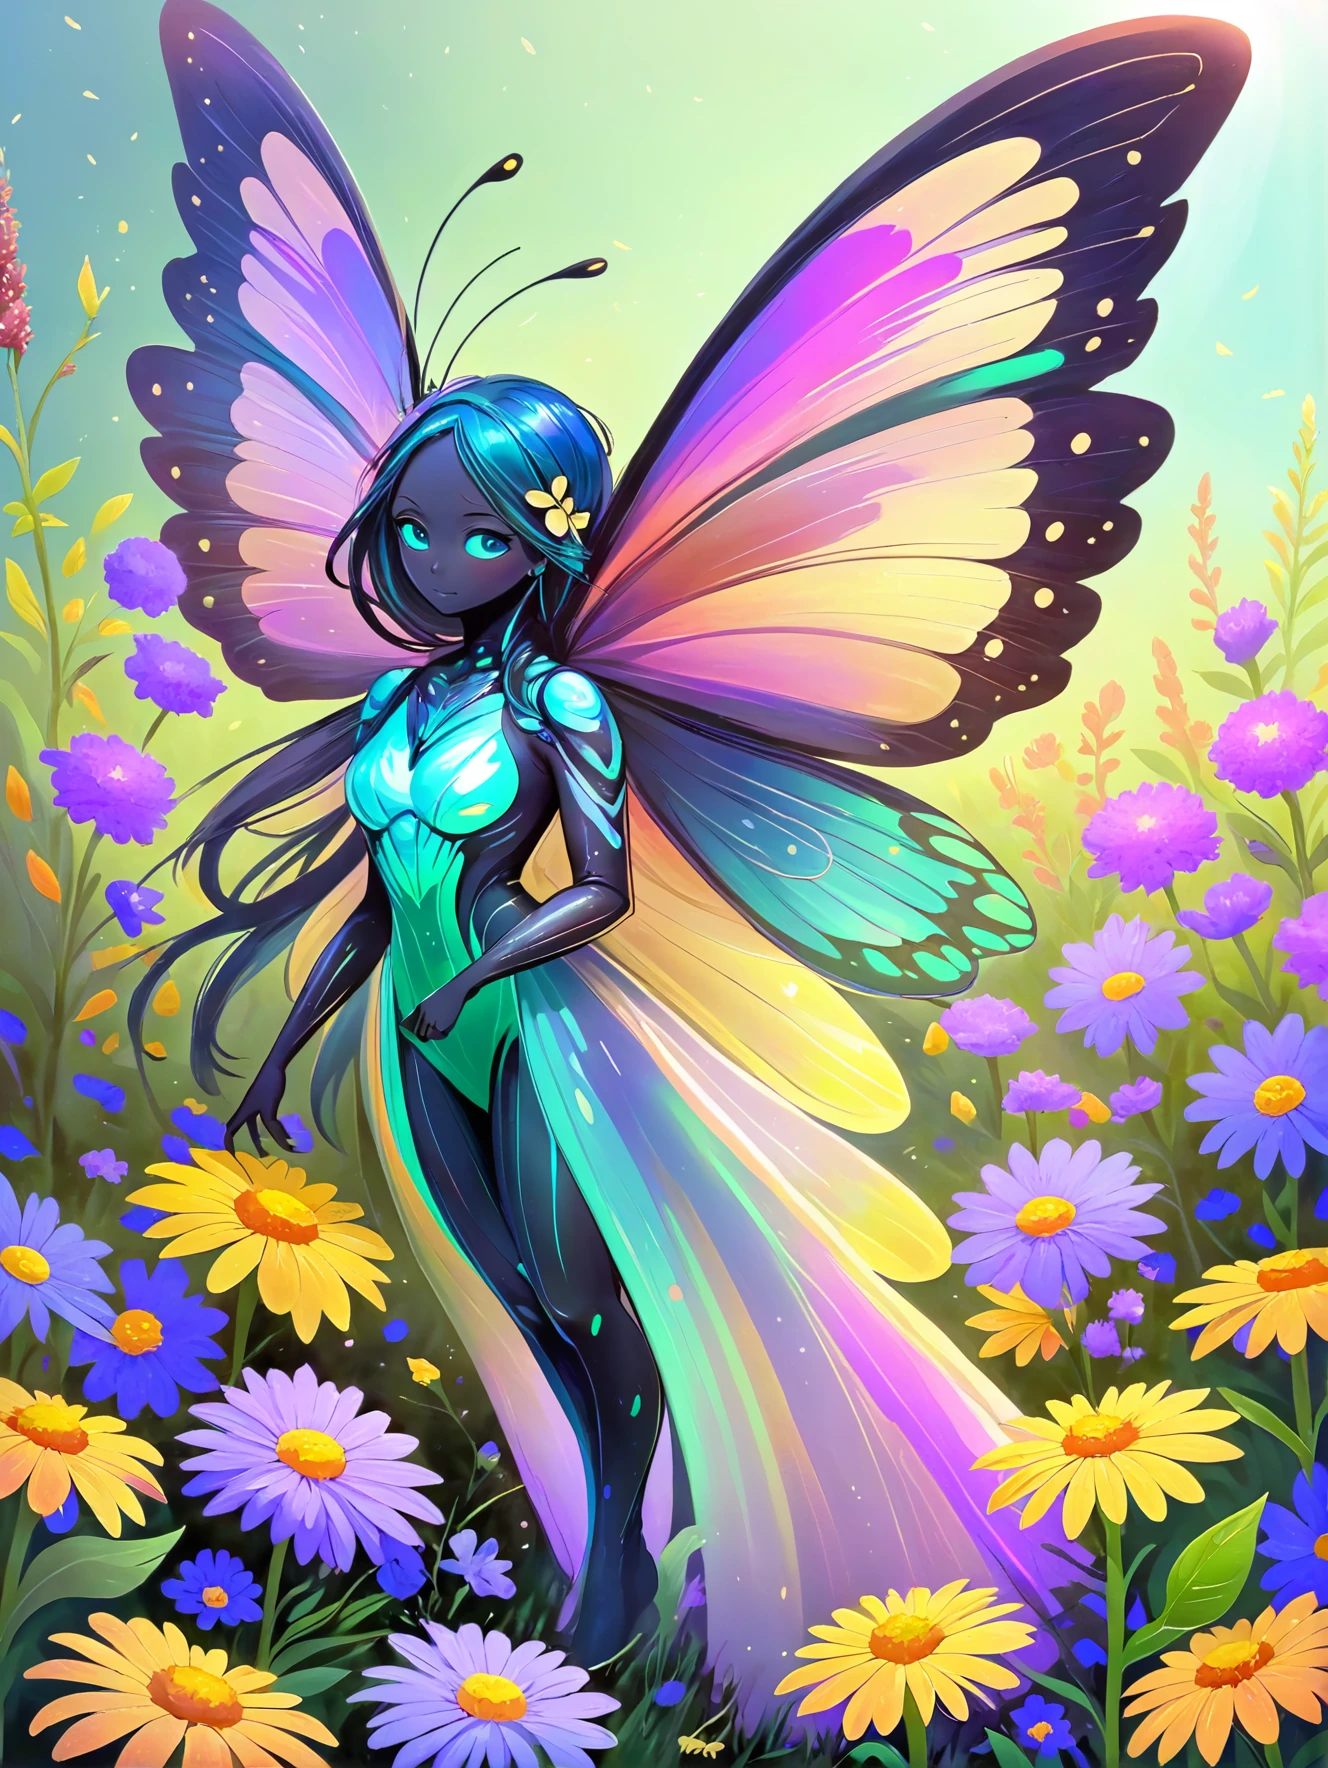 Яркий дух бабочки, с переливающимися крыльями, порхаю среди поля полевых цветов.